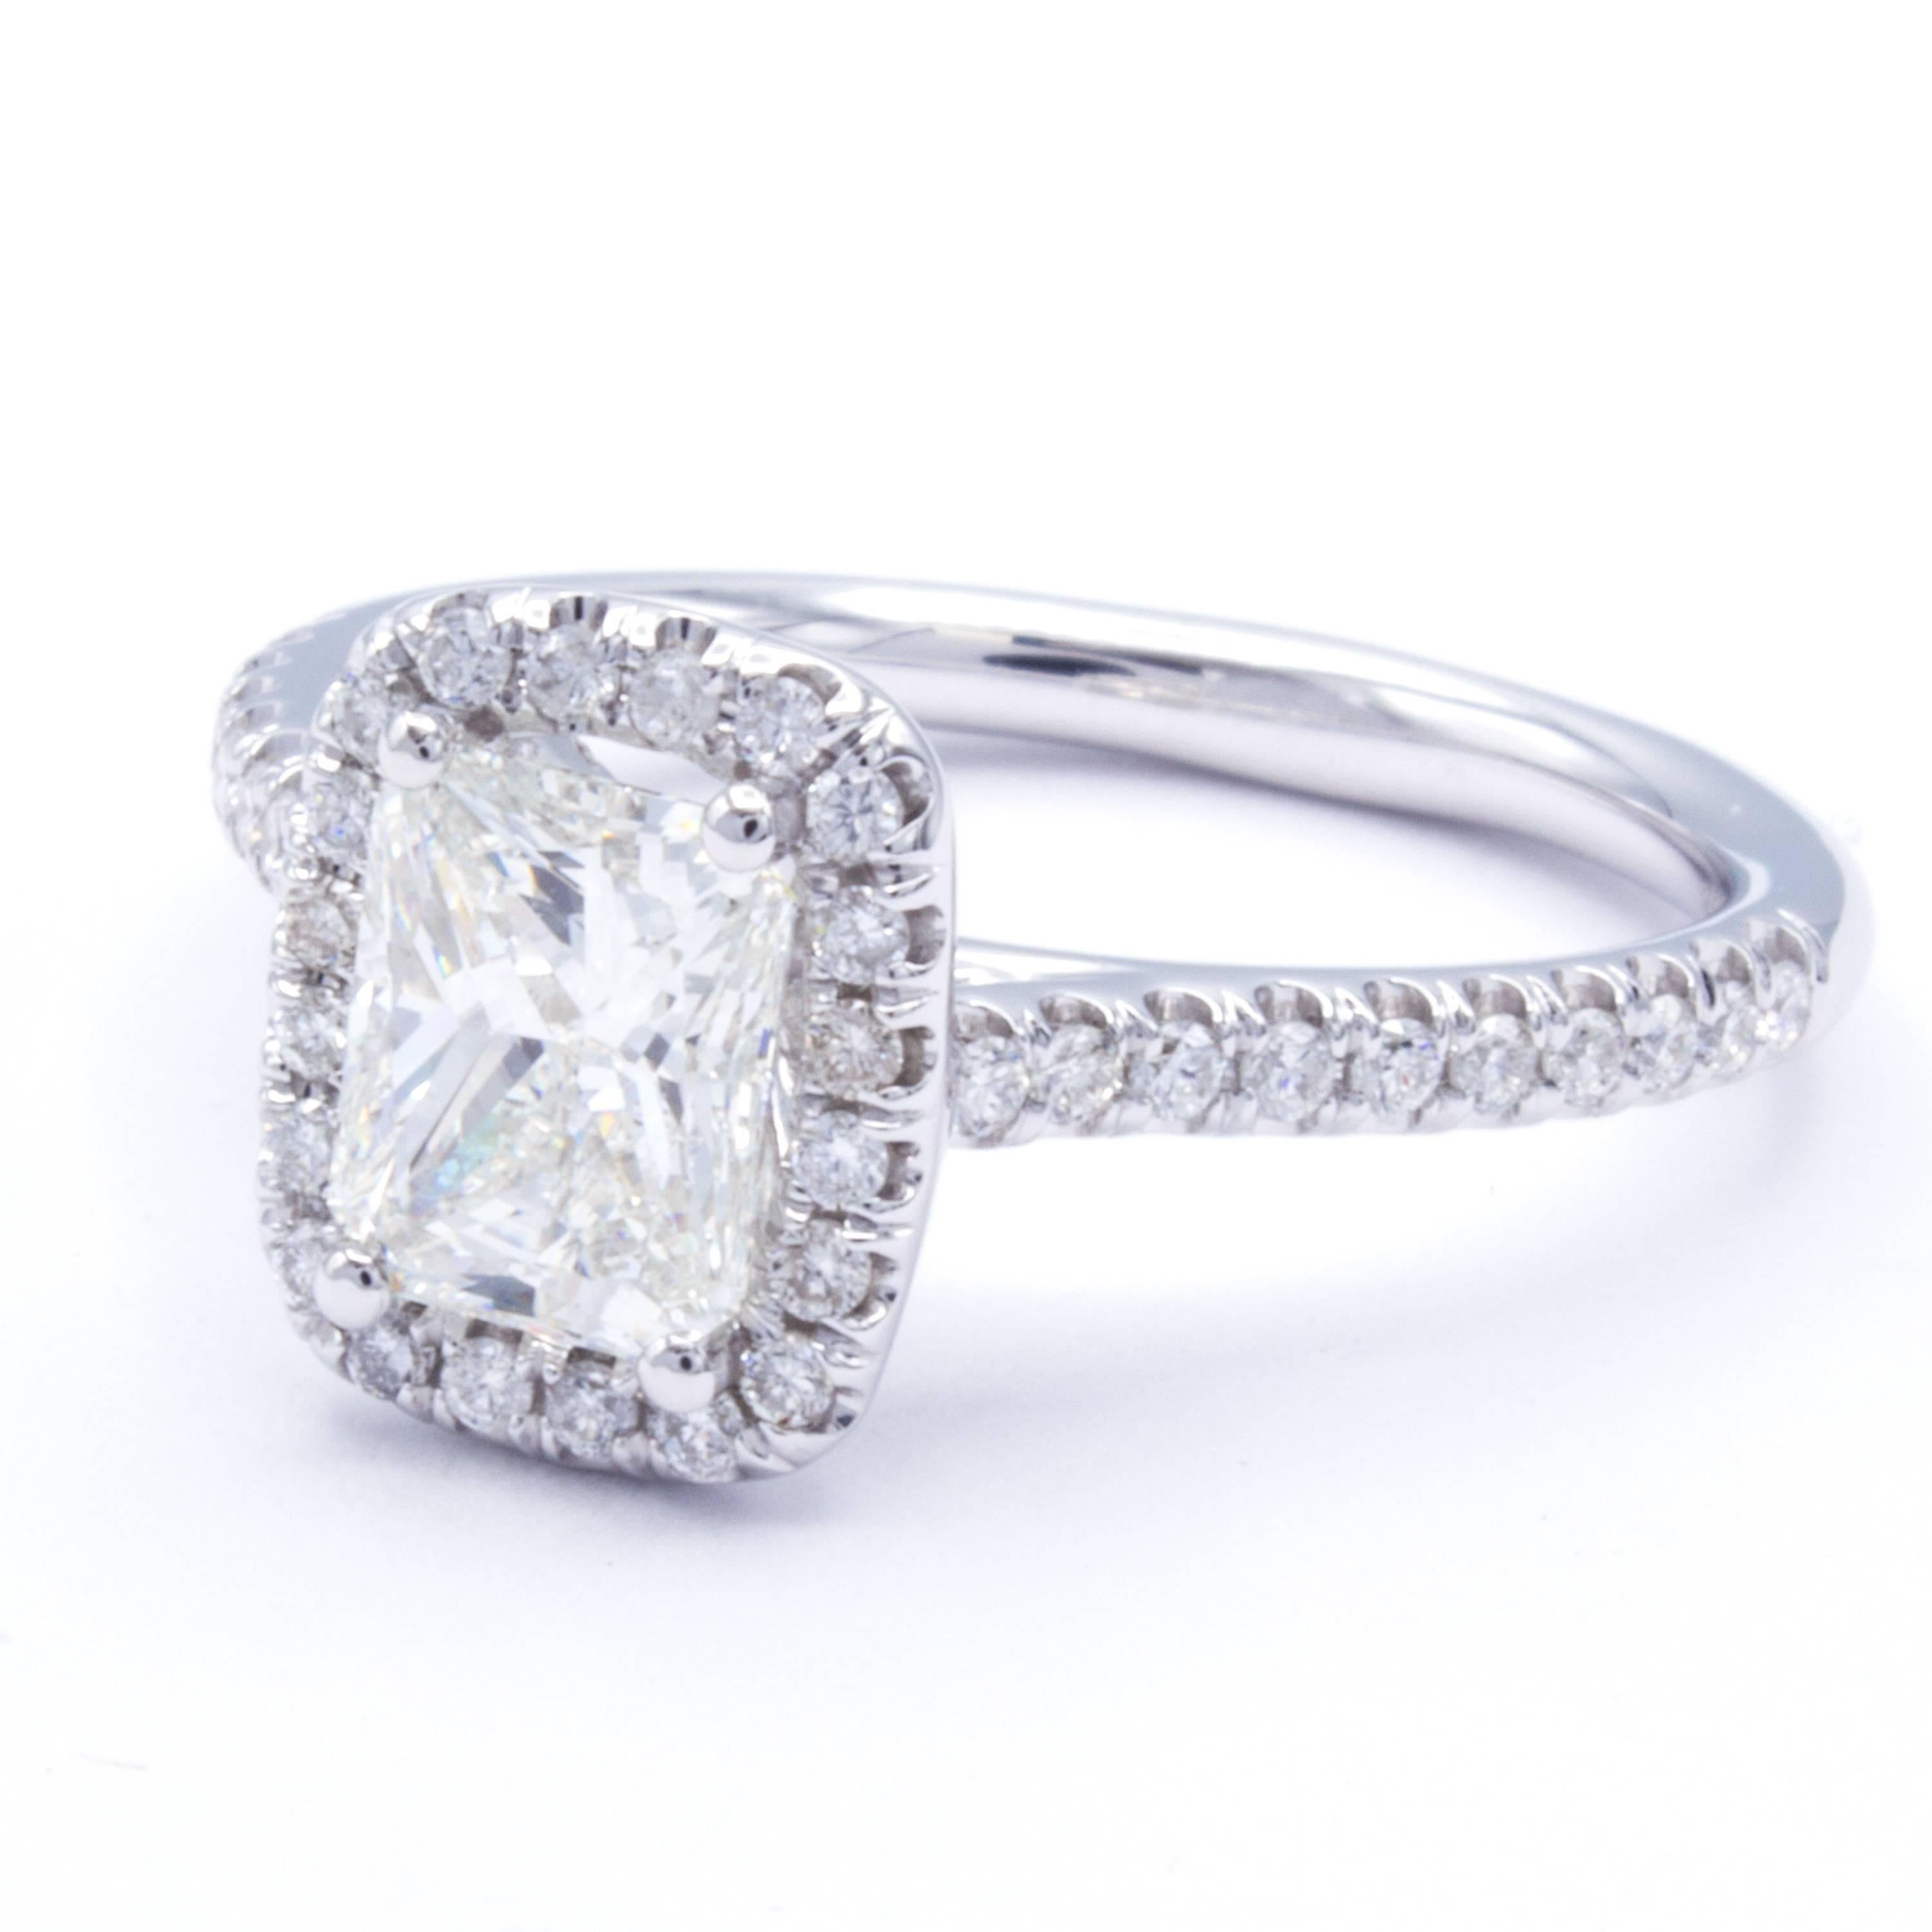 Modern David Rosenberg 1.02 Carat Radiant I/SI2 GIA Certified Diamond Engagement Ring